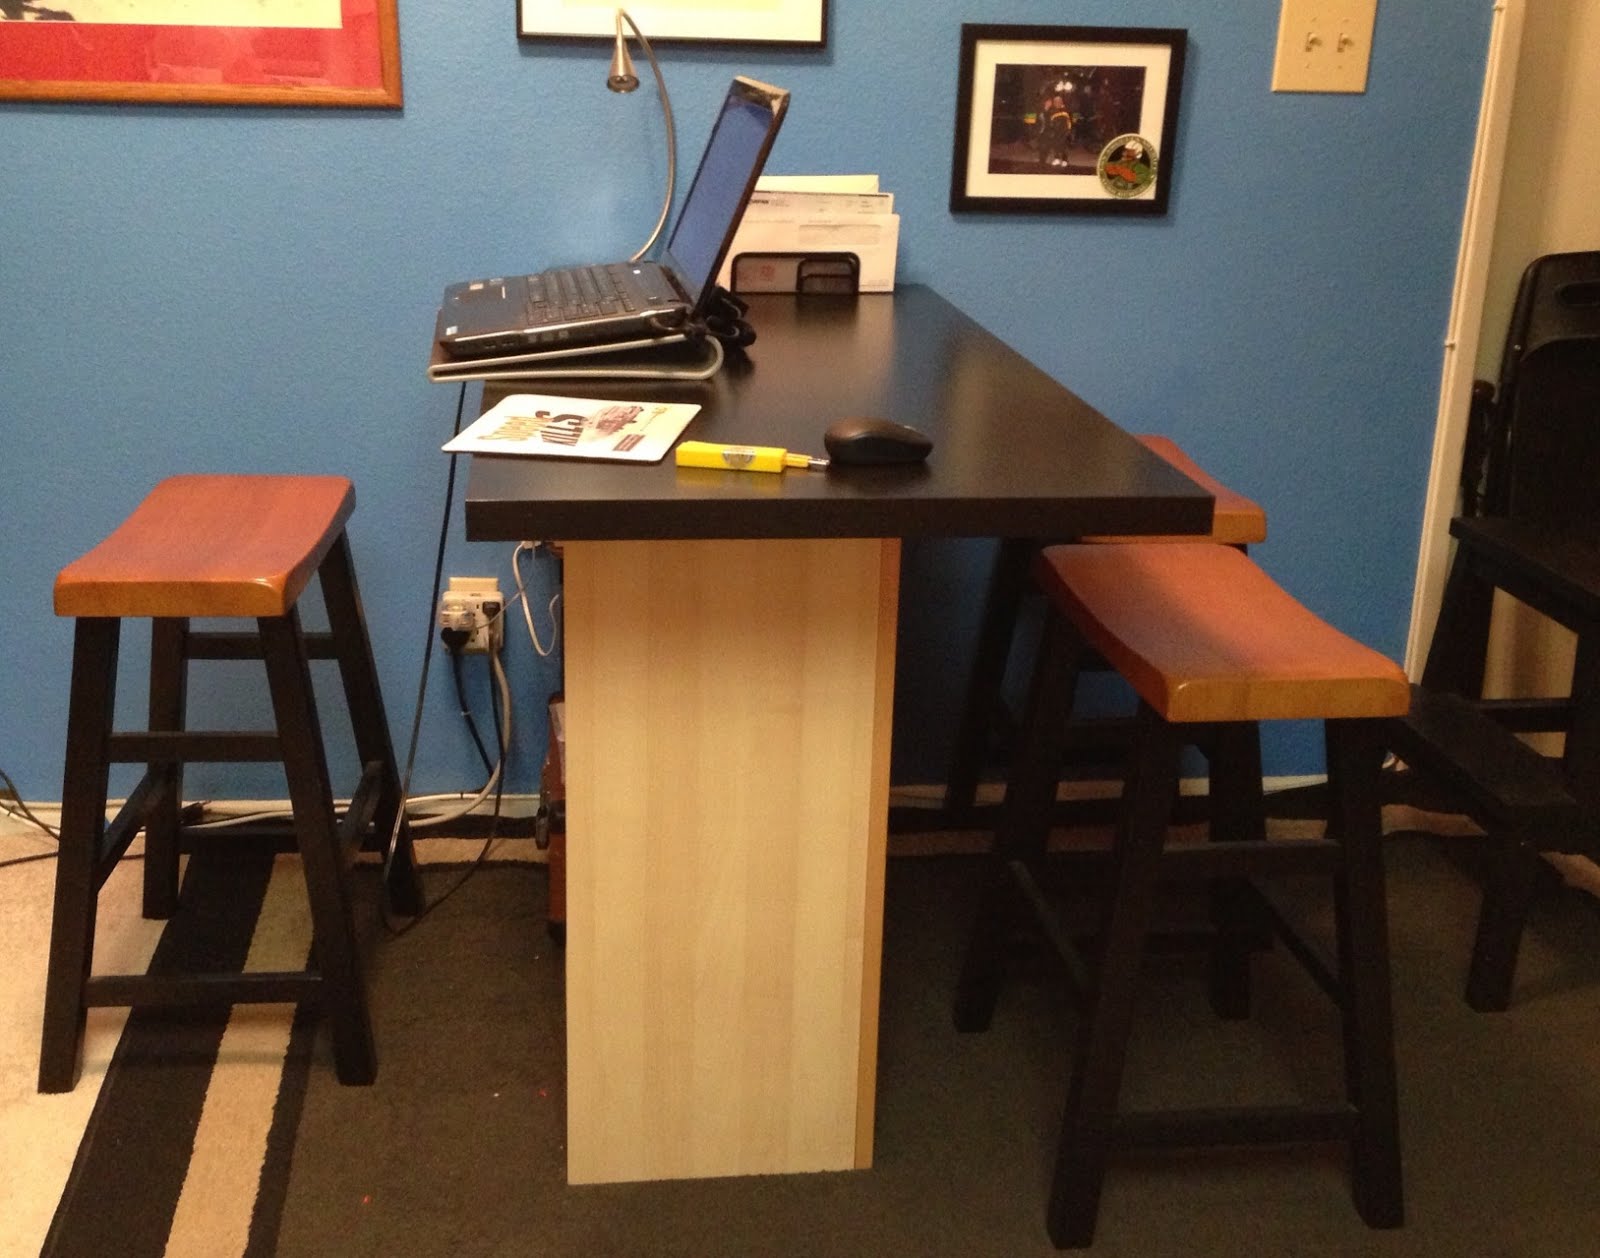 Breakfast bar/home office desk, IKEA Hackers